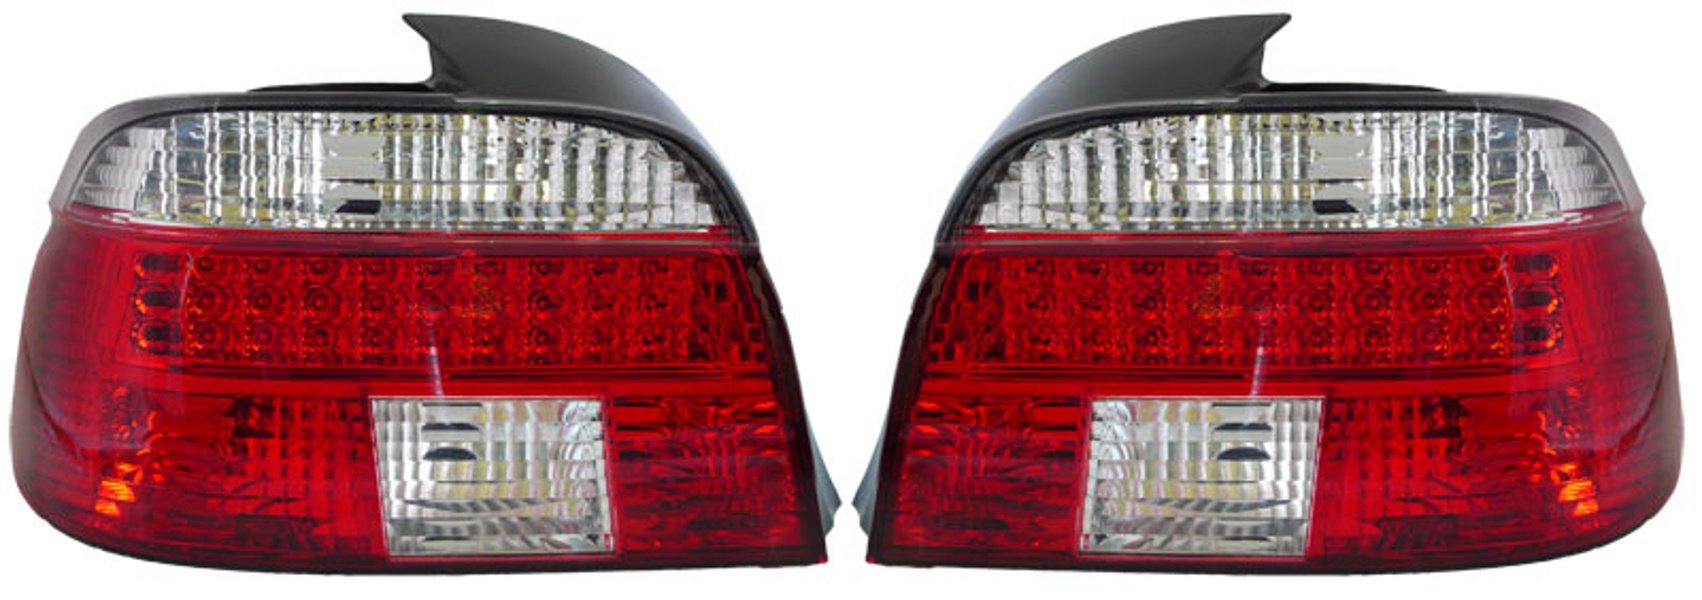 Baklampor LED Briljant Vit/Röd BMW 5-Serien E39 Sedan 1995-2000